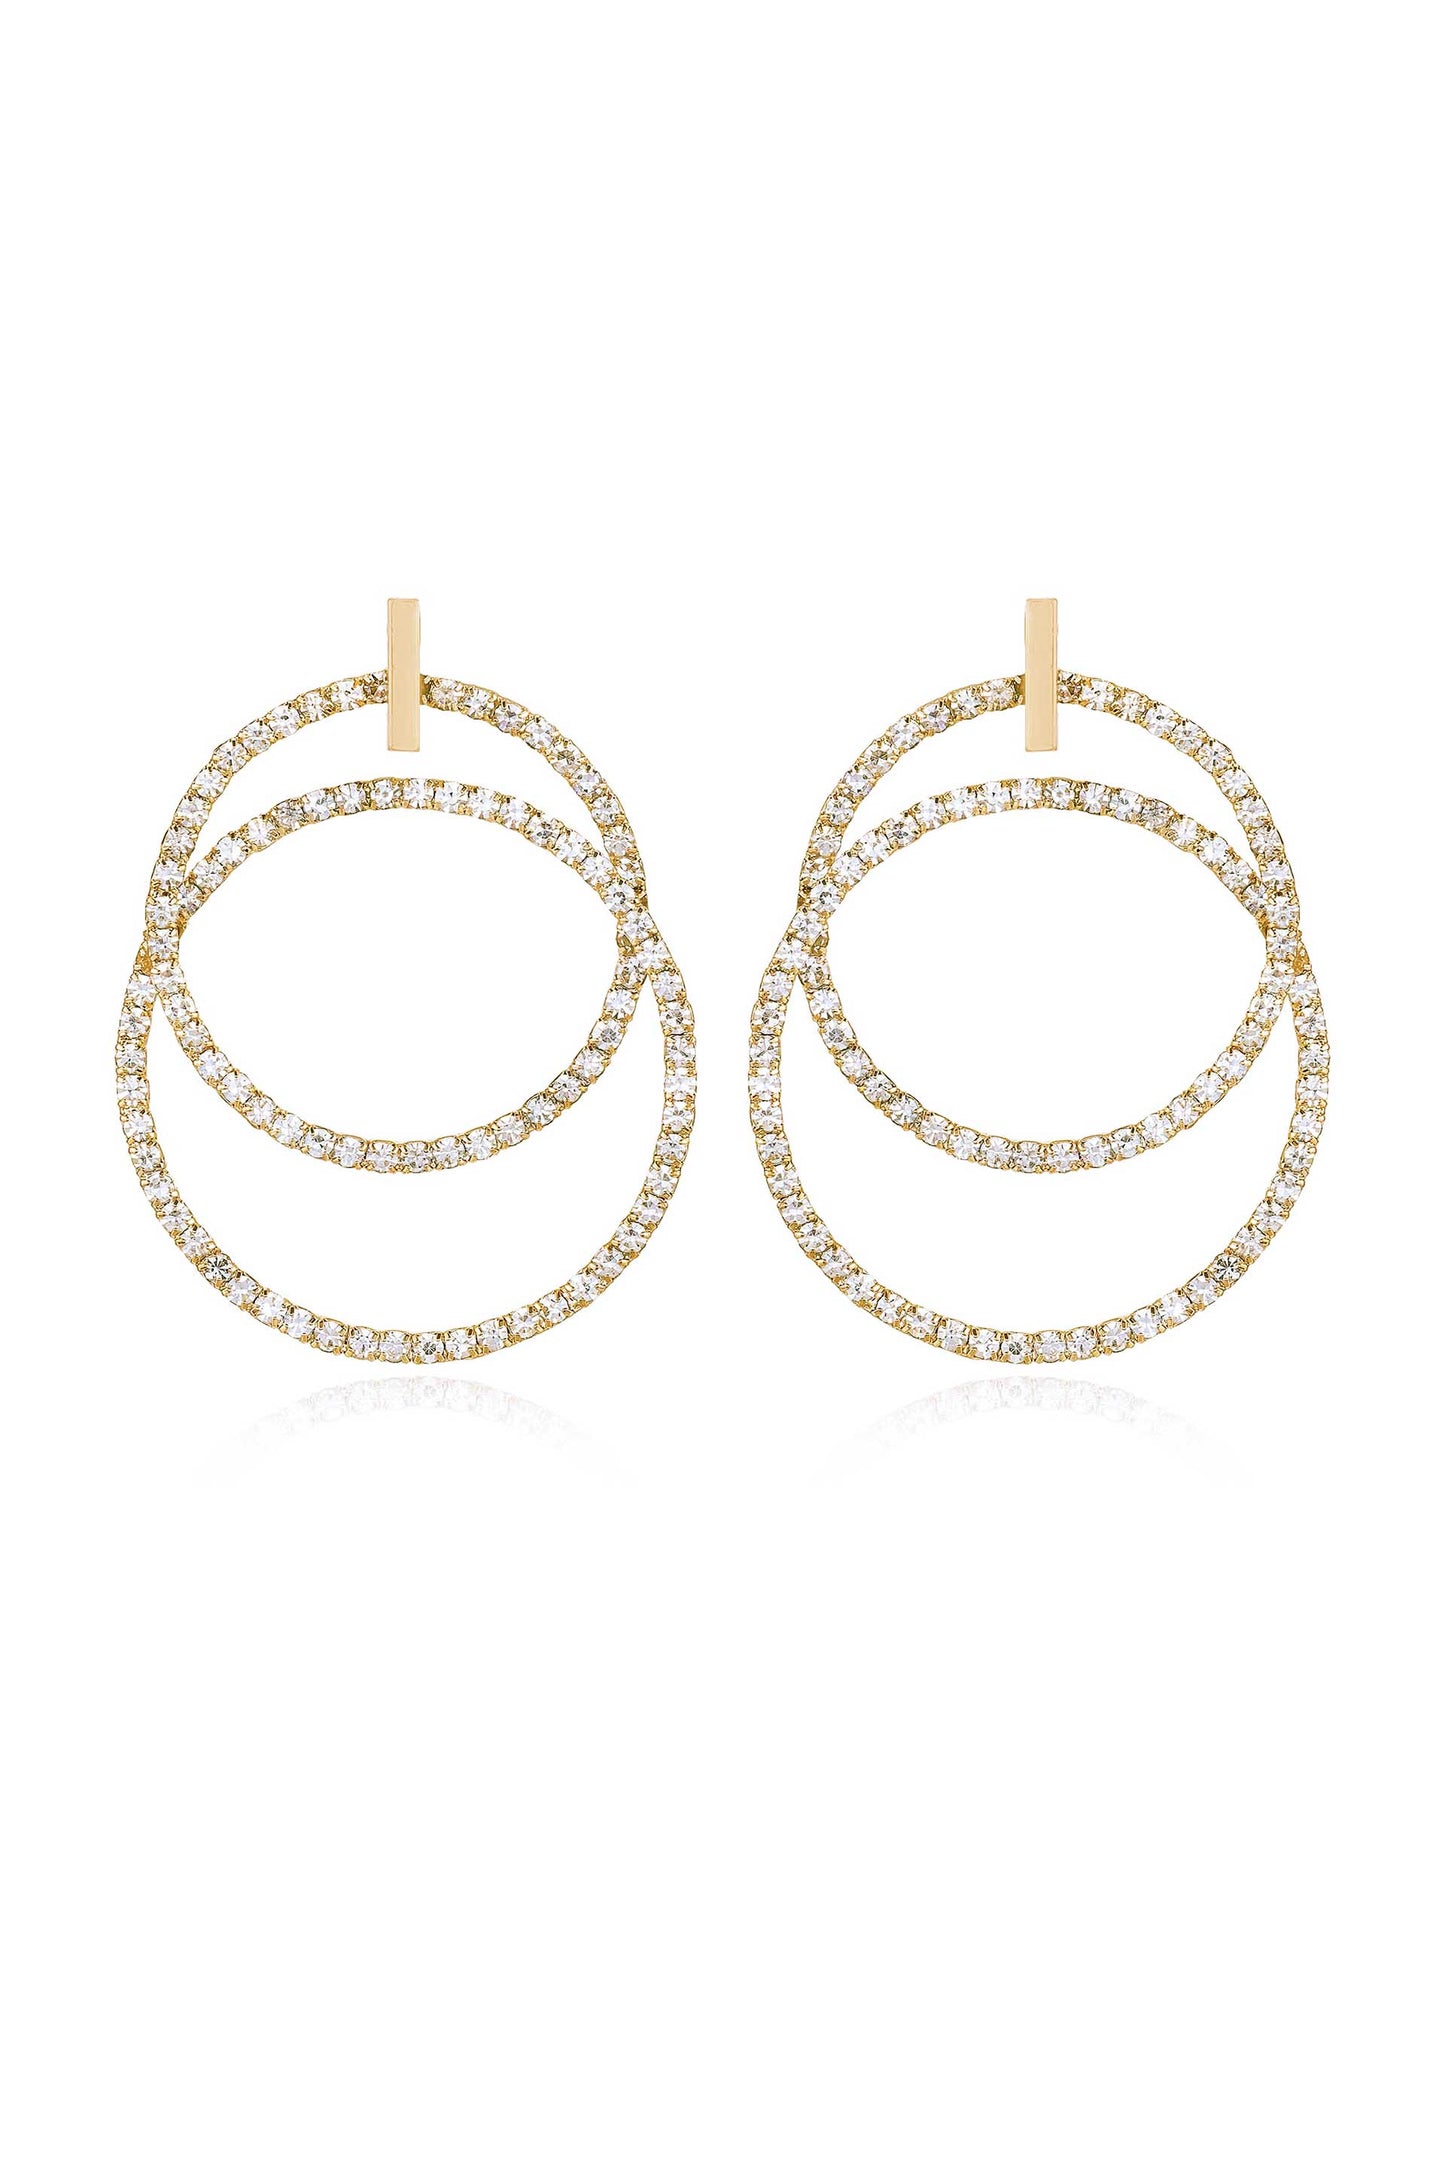 Crystal Dangle Loops 18k Gold Plated Earrings